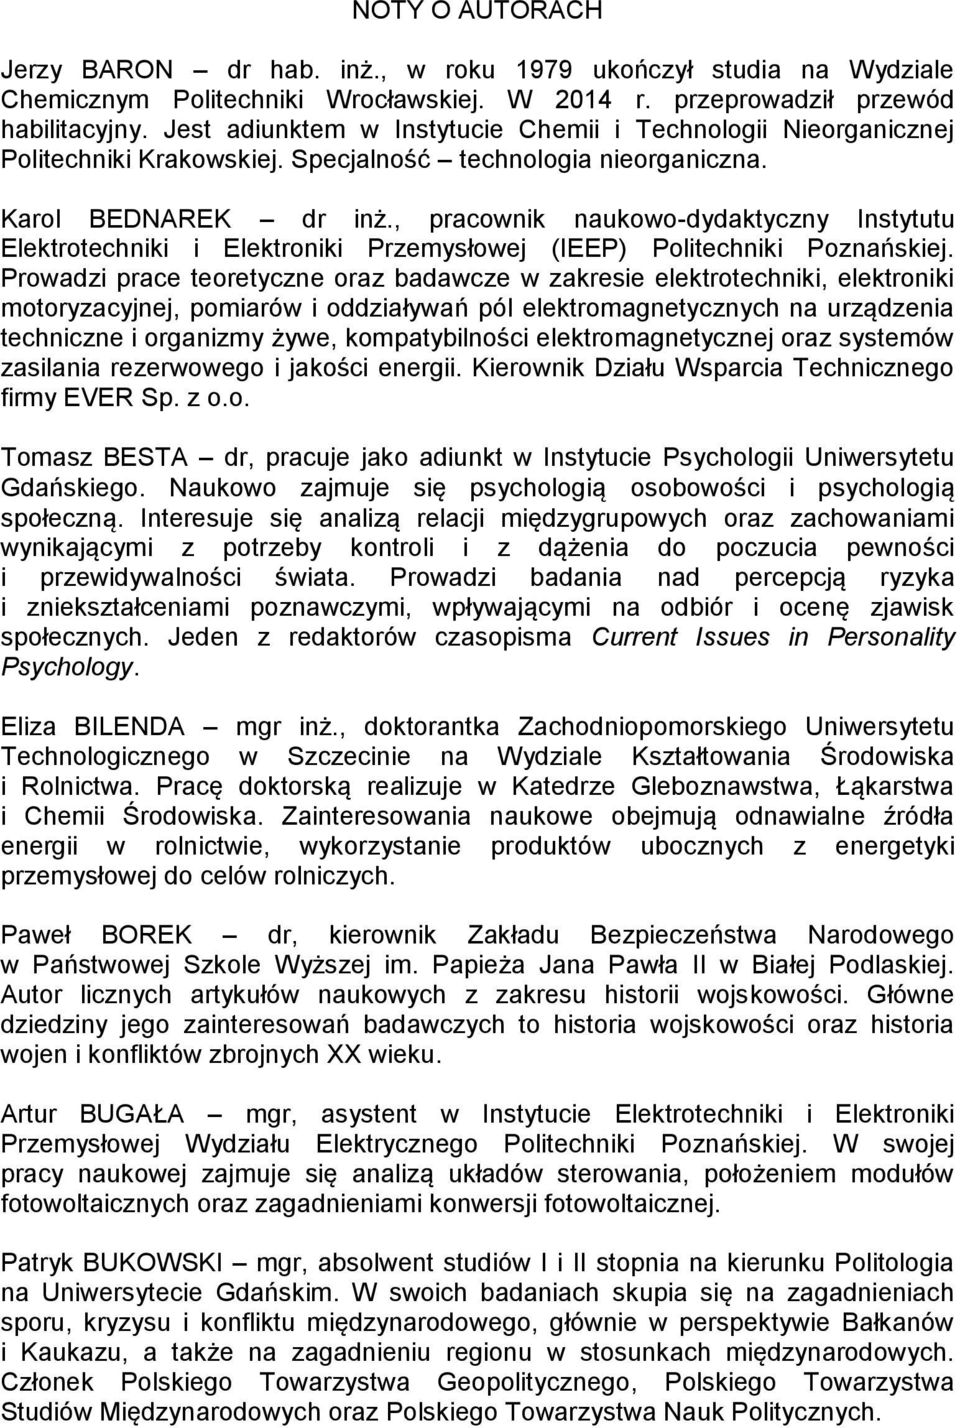 , pracownik naukowo-dydaktyczny Instytutu Elektrotechniki i Elektroniki Przemysłowej (IEEP) Politechniki Poznańskiej.